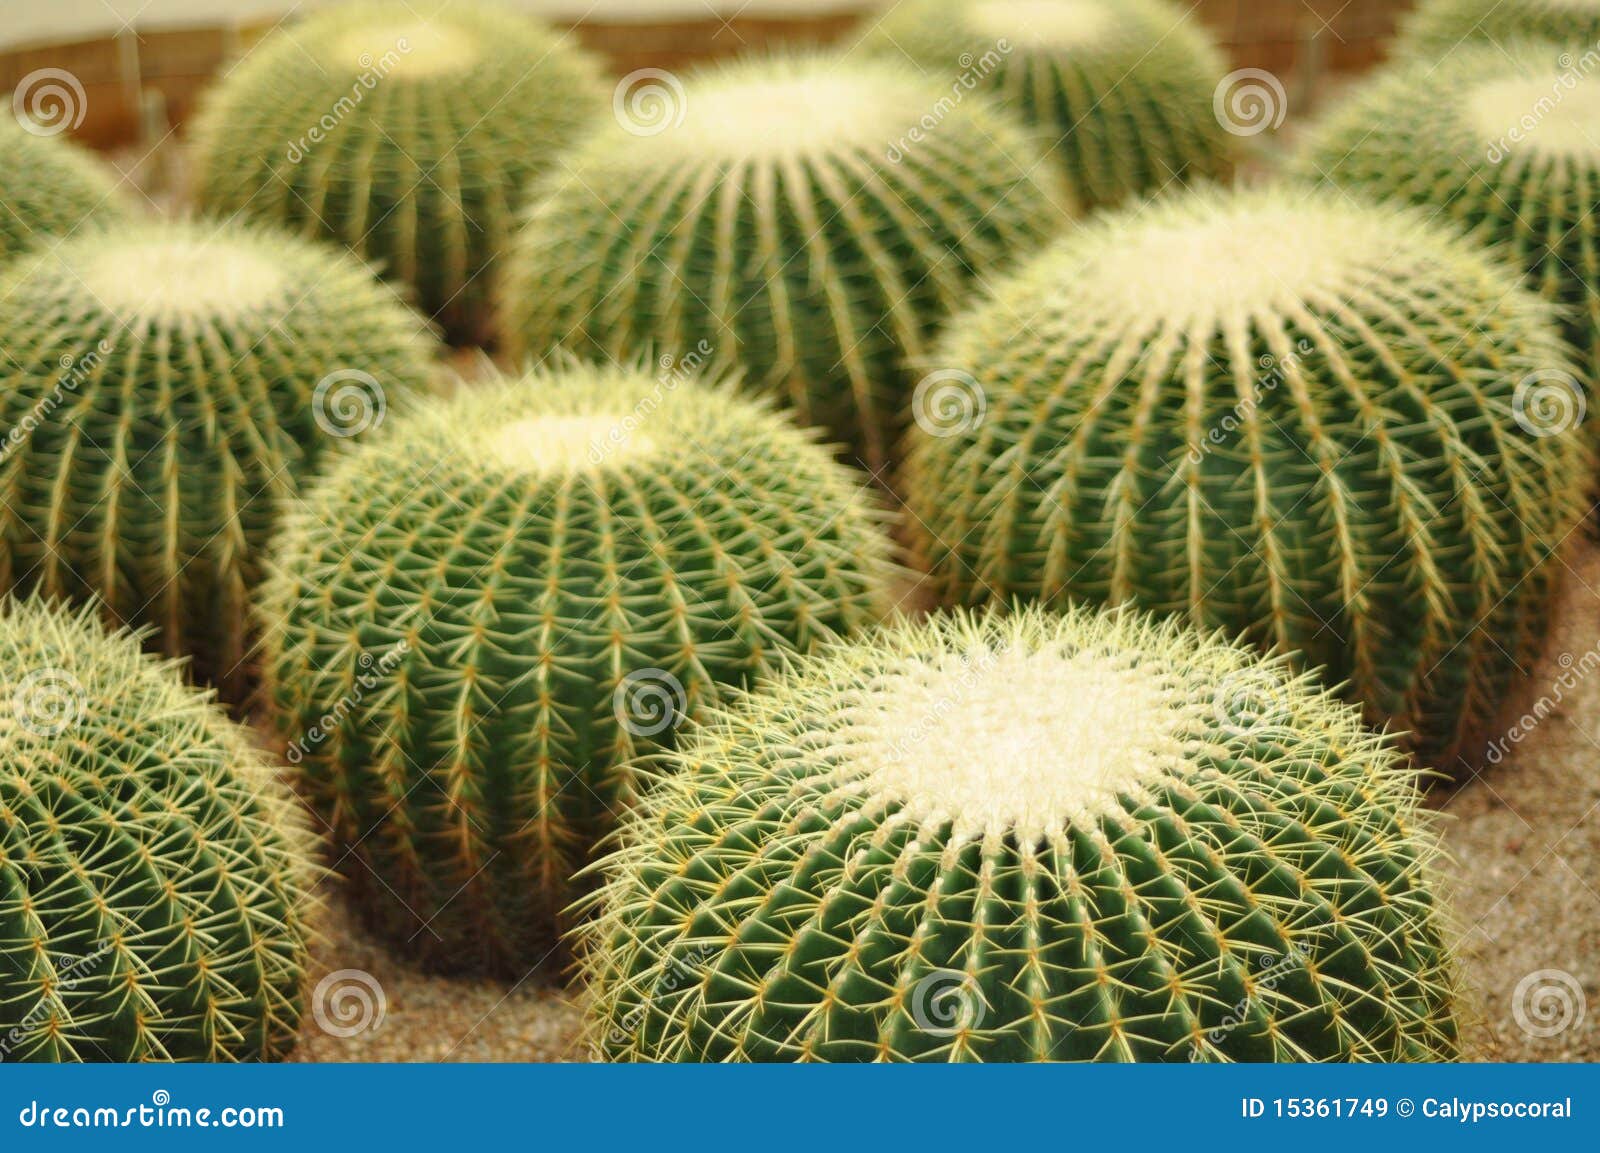  Kaktus  obraz stock Obraz zoonej z ogr d aridity 